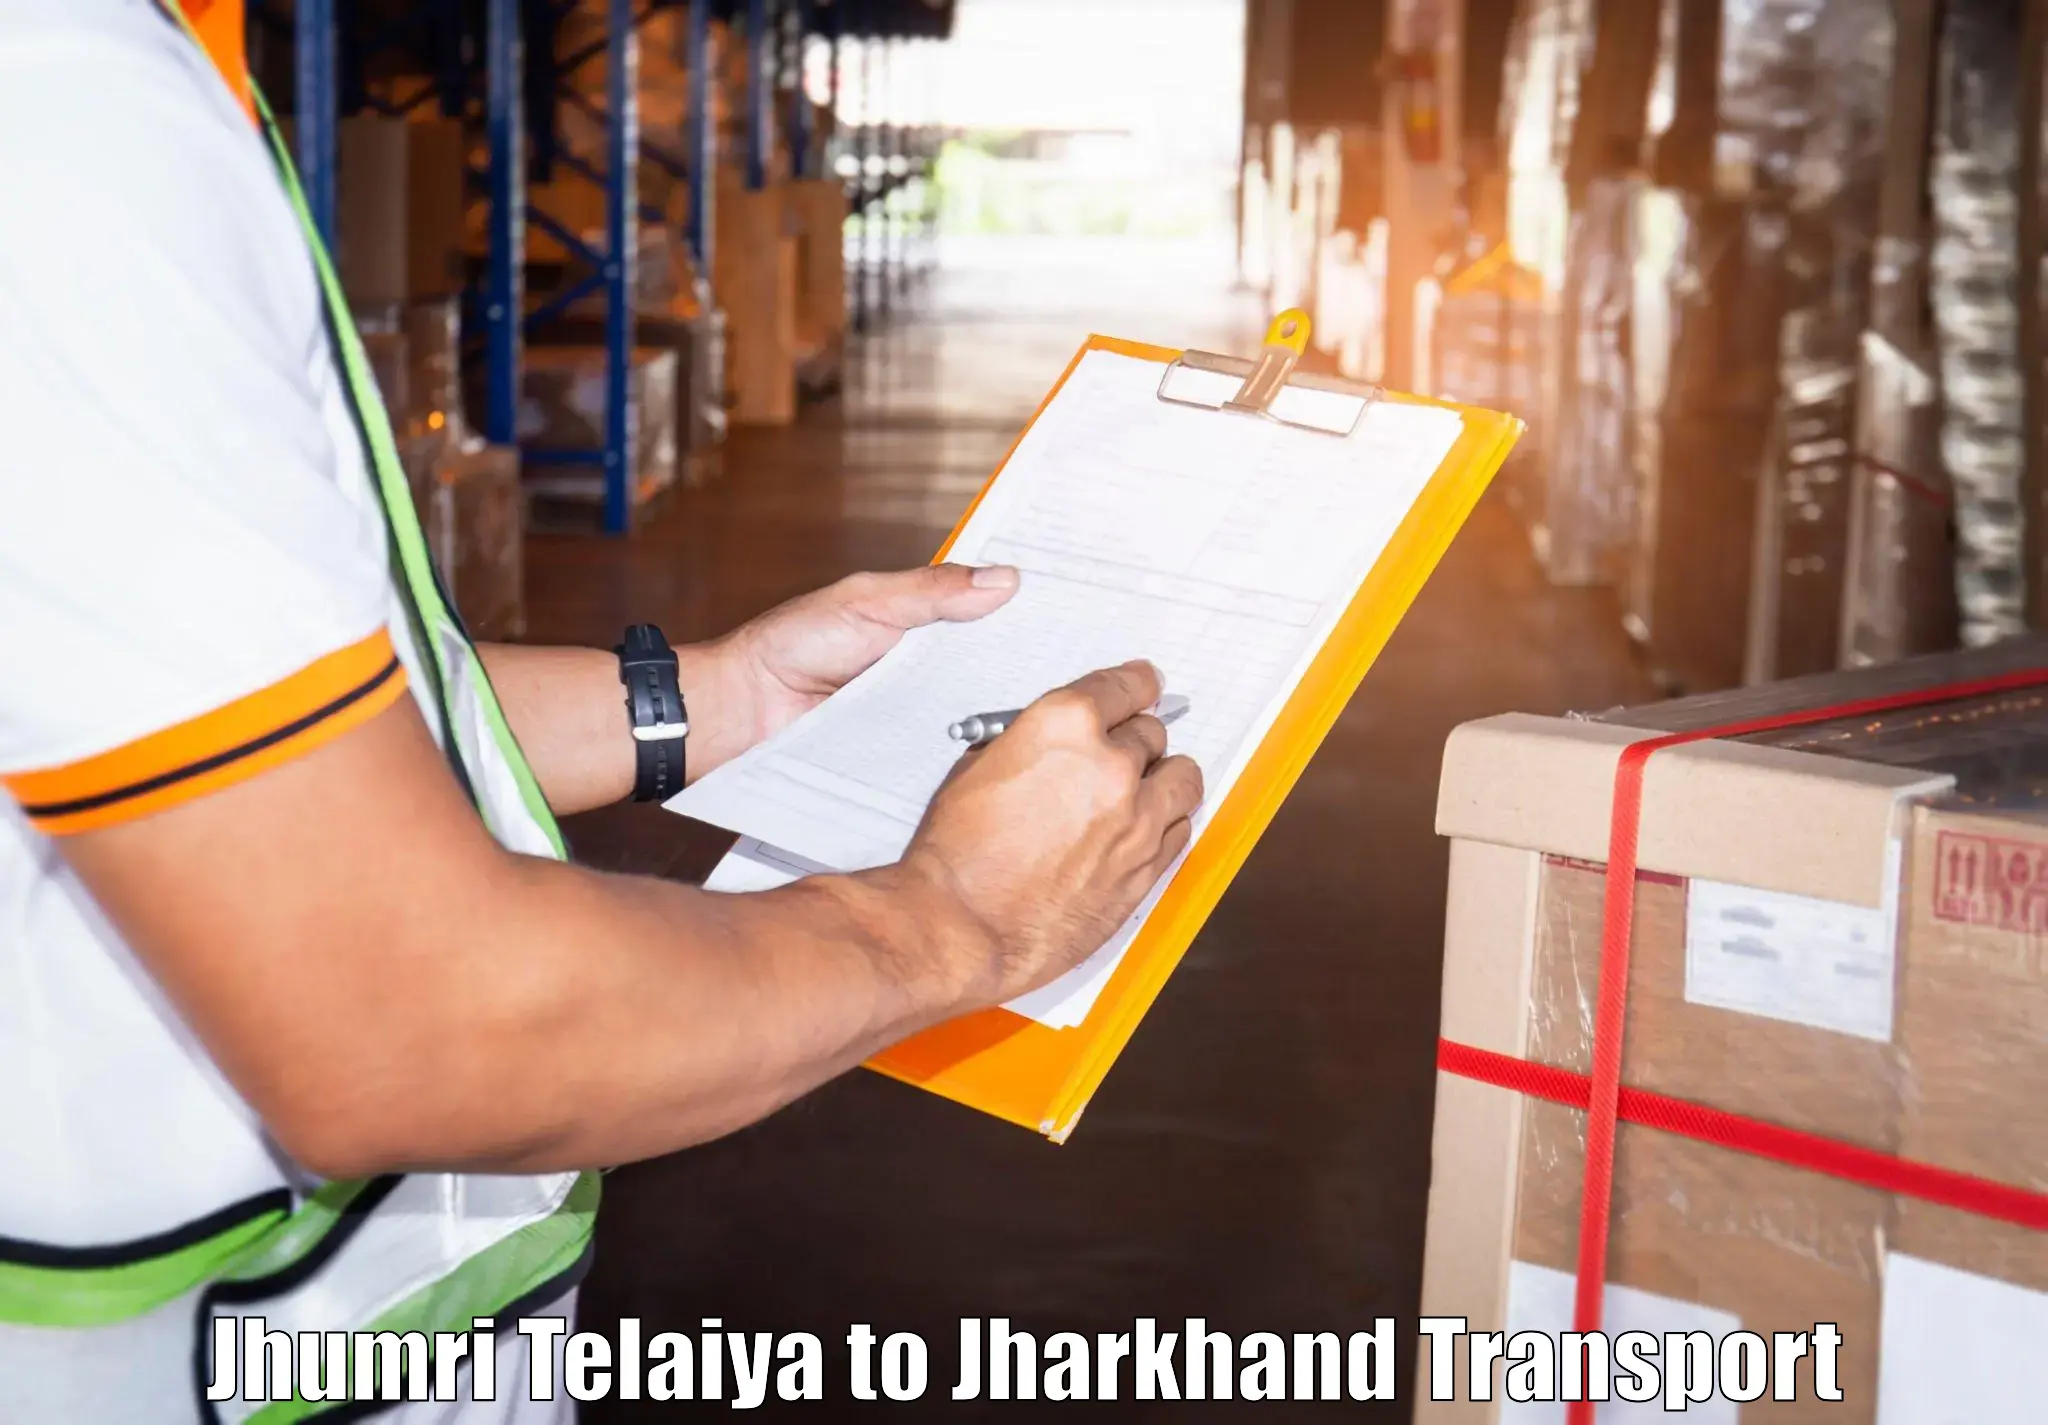 Goods delivery service Jhumri Telaiya to Palamu